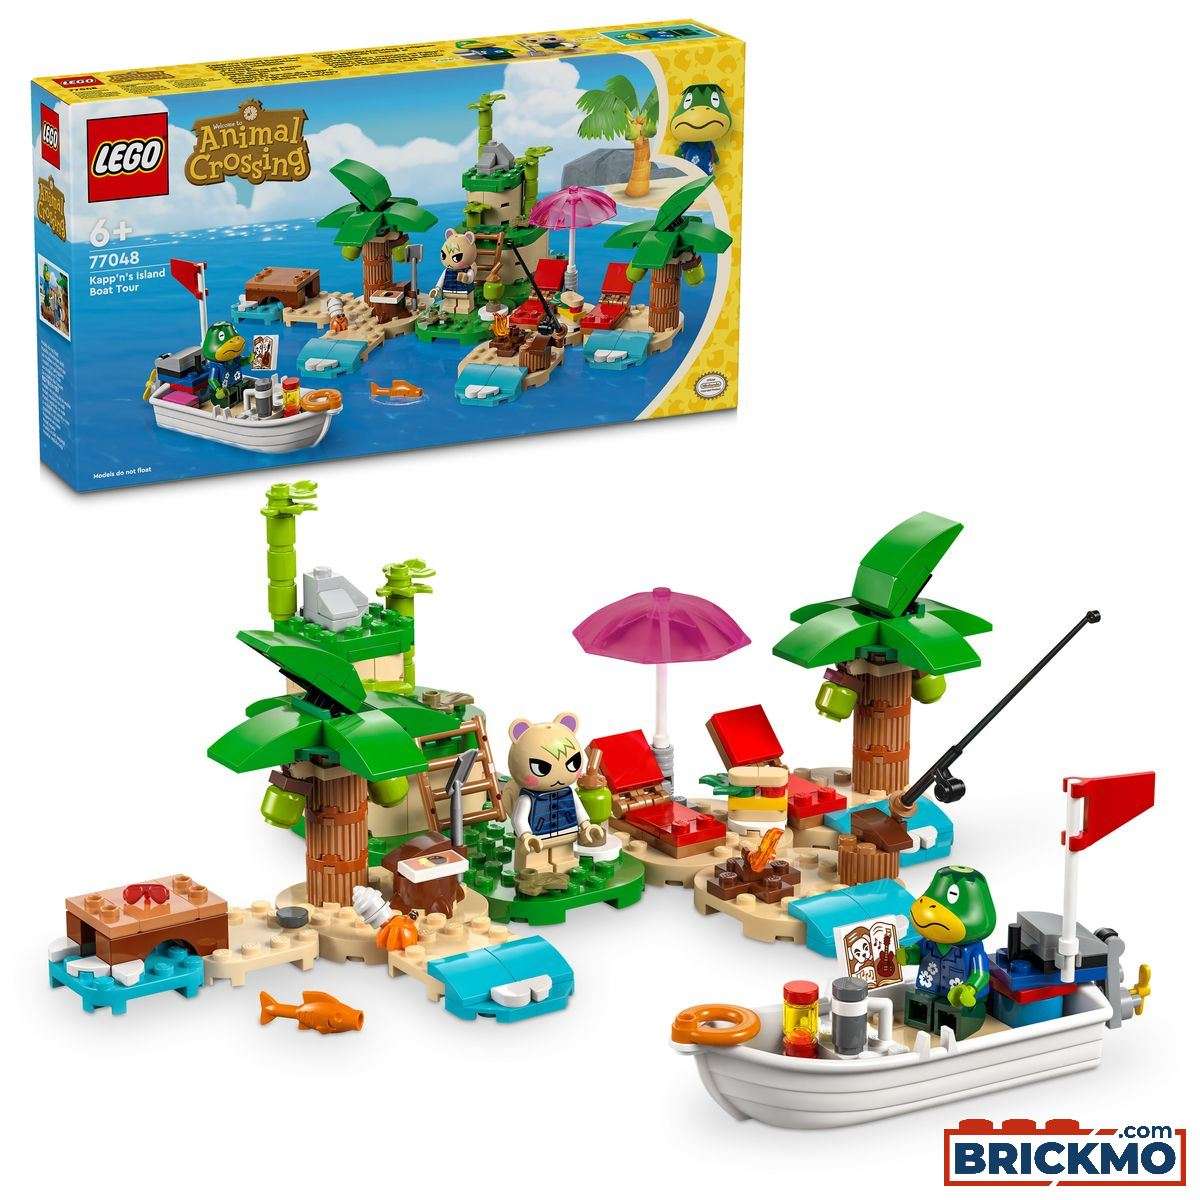 LEGO Animal Crossing 77048 Kapp‘n hajókirándulása a szigeten 77048